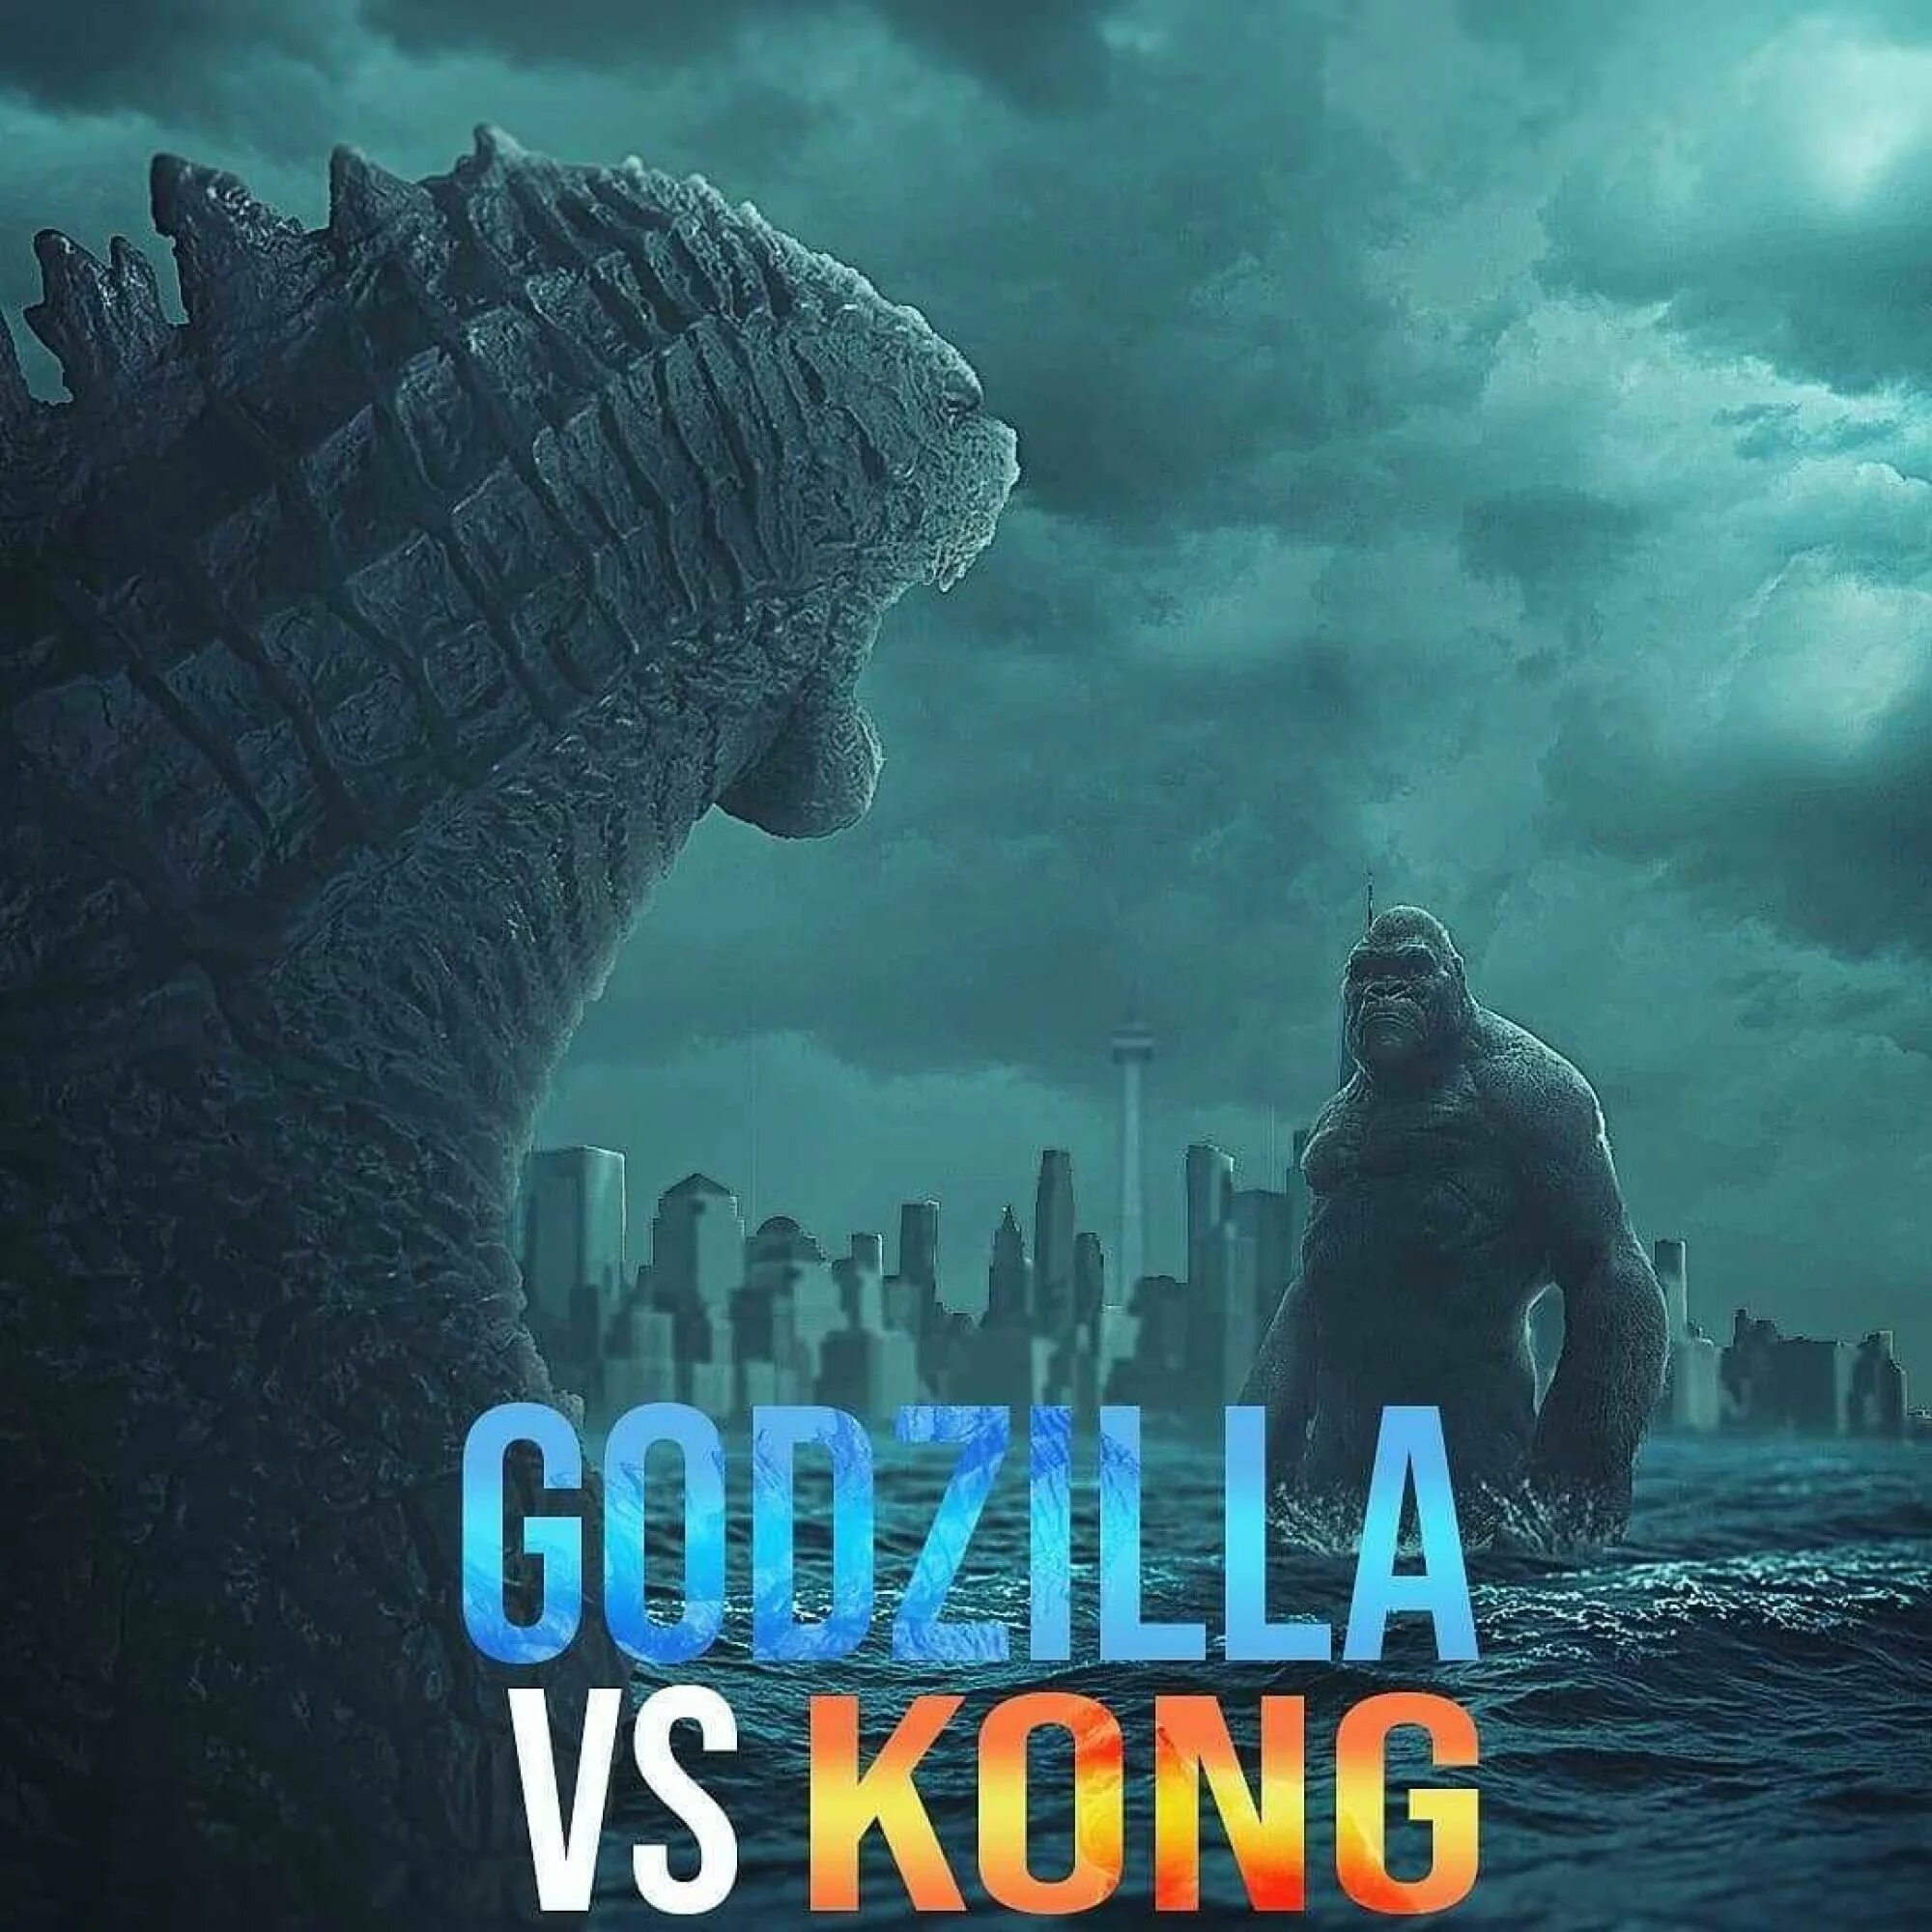 Годзилла и конг новая отзывы. Godzilla vs King posters 2021. Кинг-Конг 2021 года. Годзилла Конга.